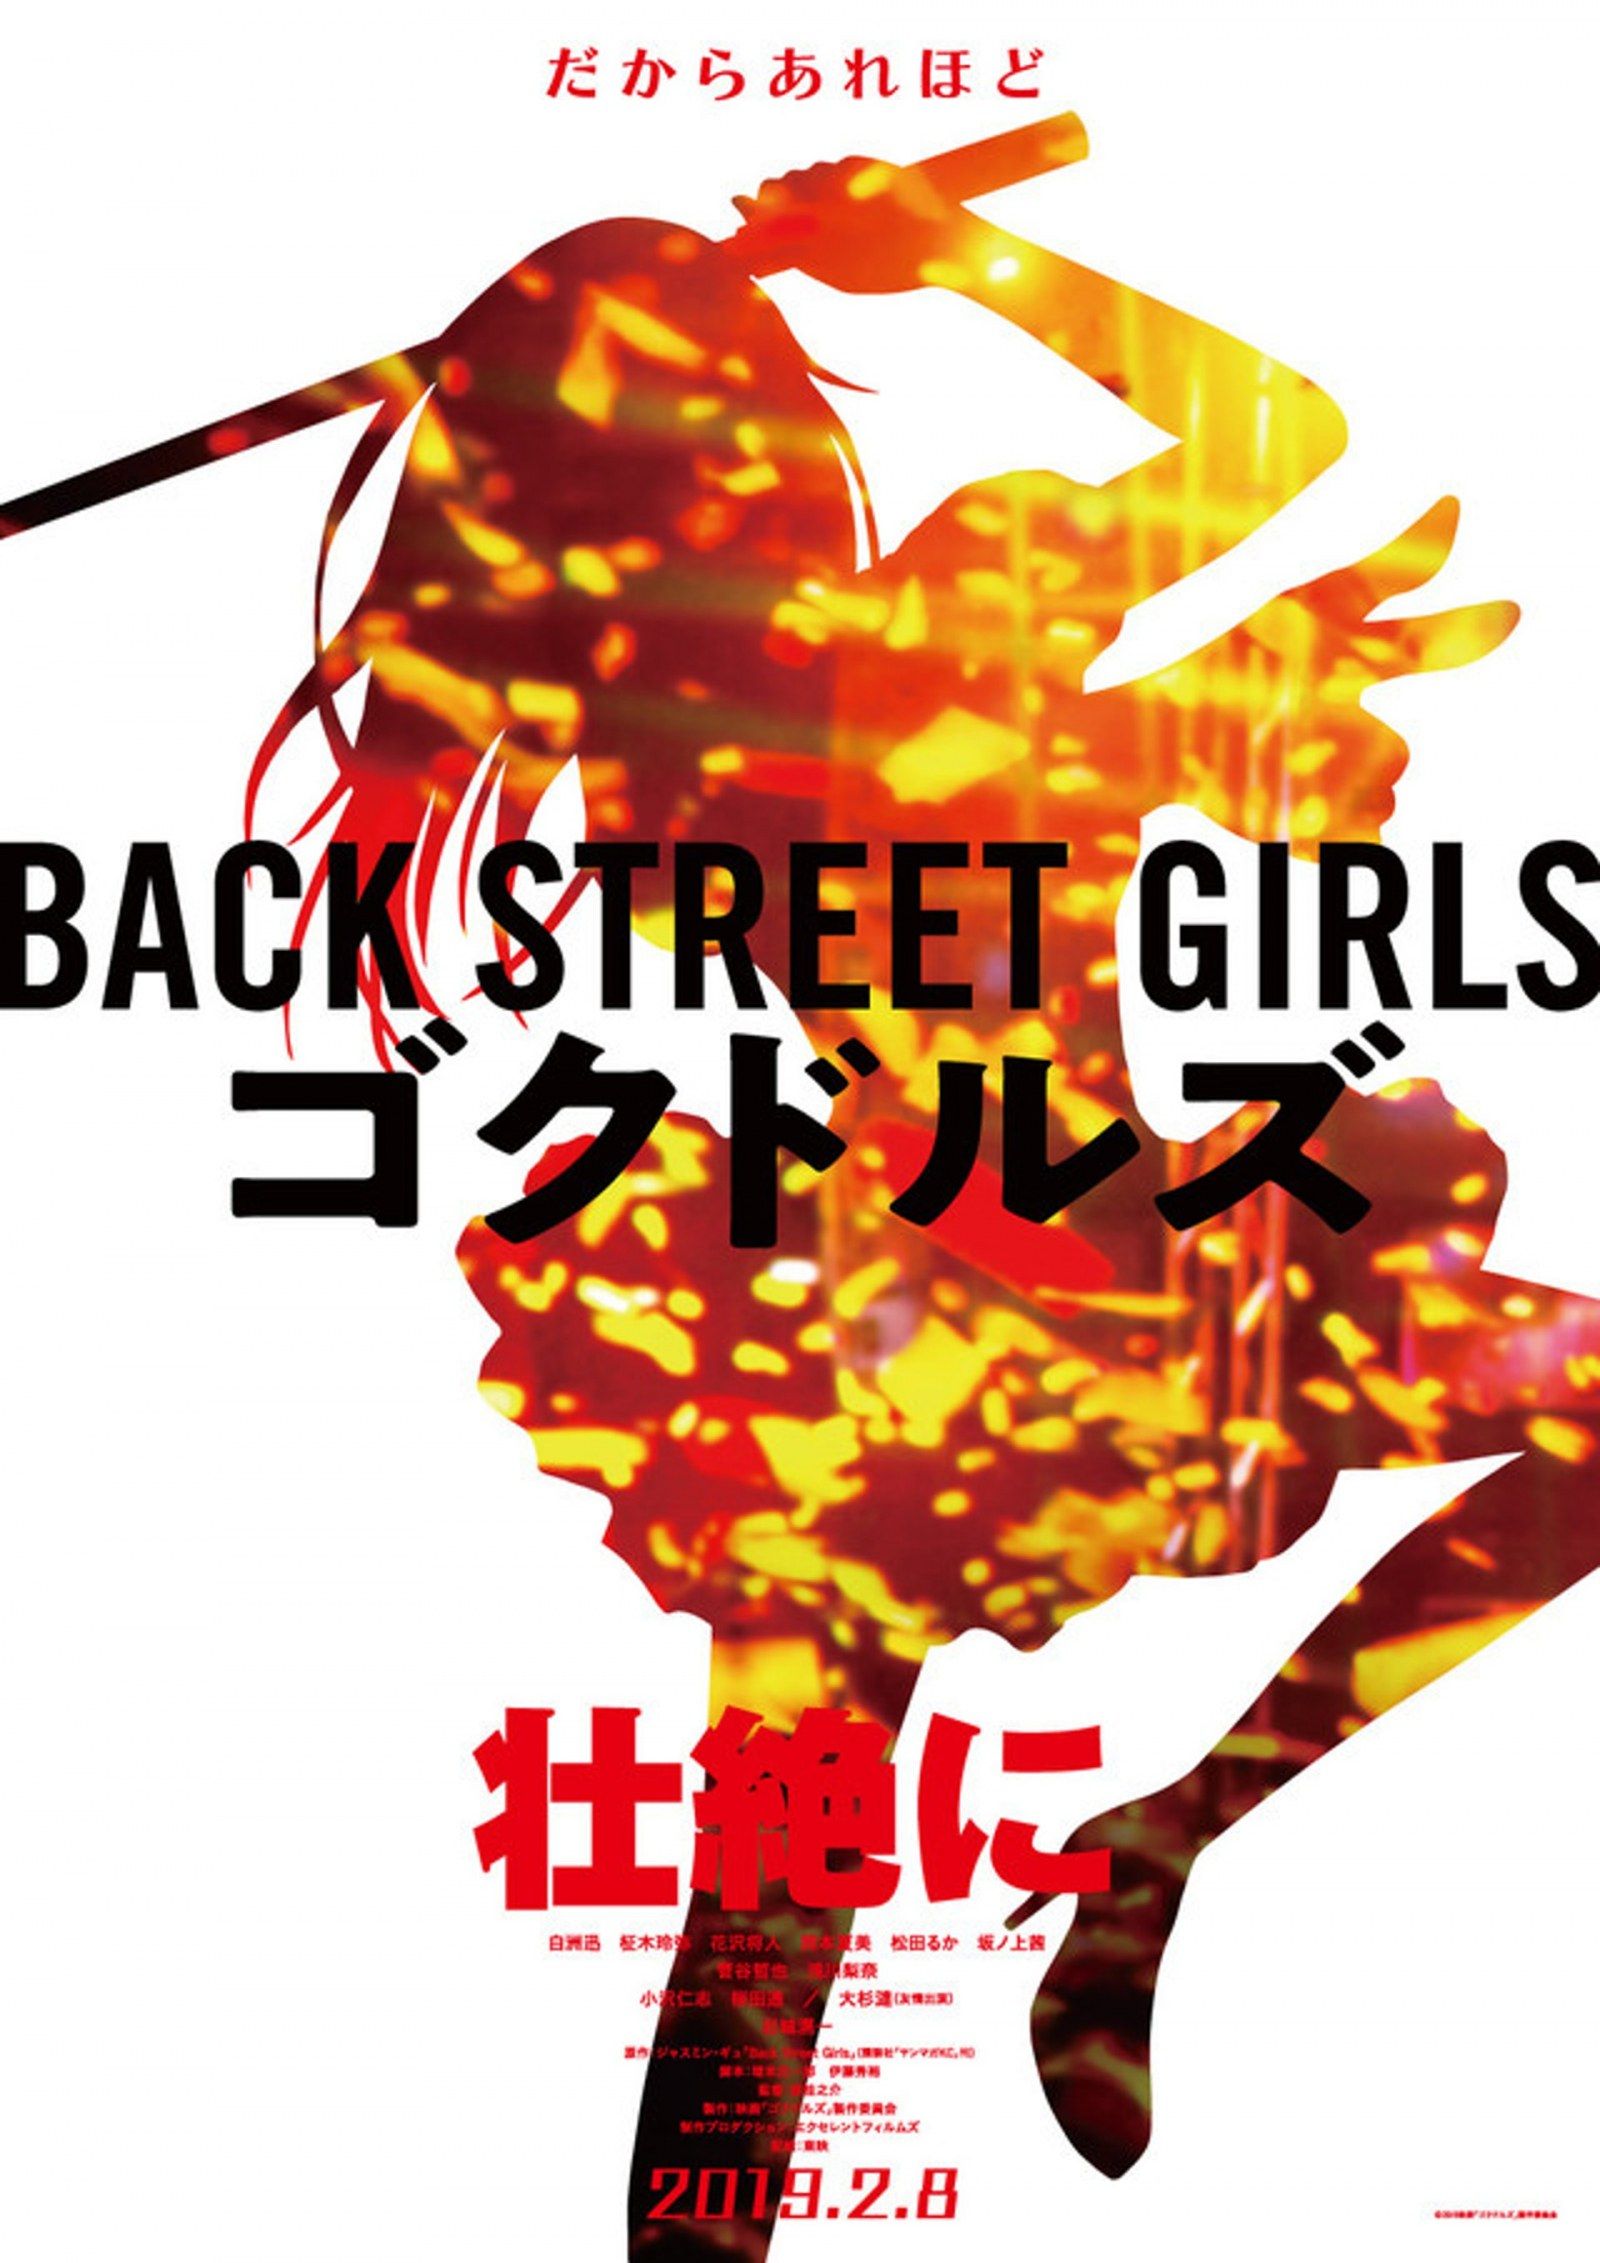 Casting, affiche et trailer pour le film live Back Street Girls